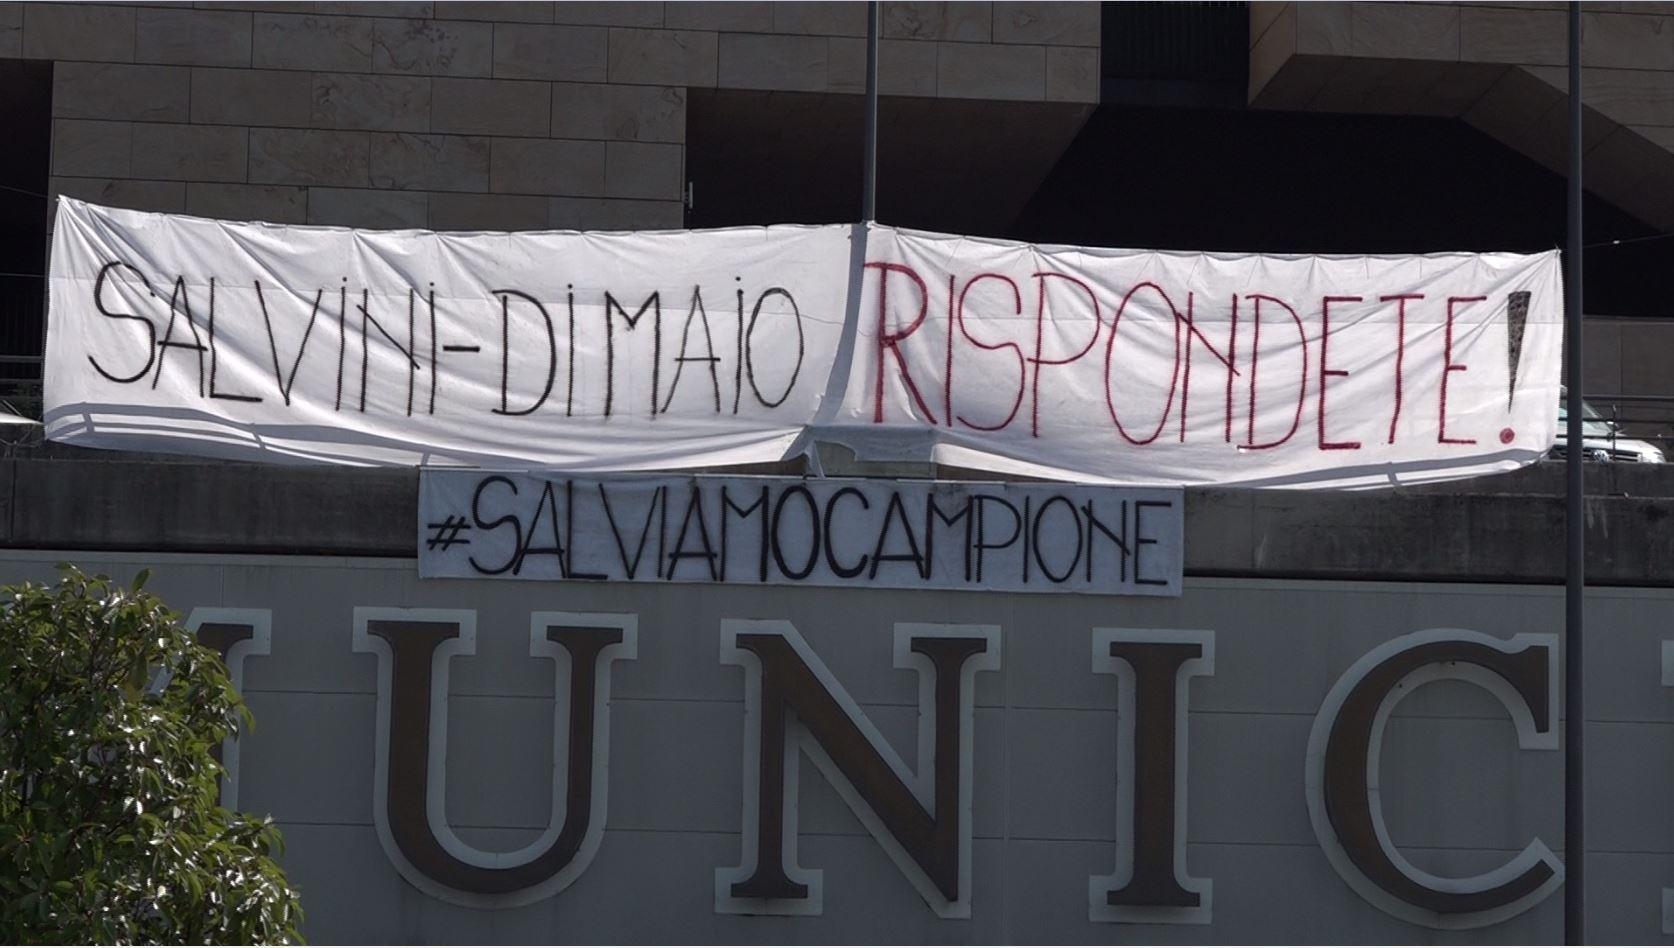 Uno striscione chiama in causa i politici italiani: Salvini e Di Maio, rispontete!